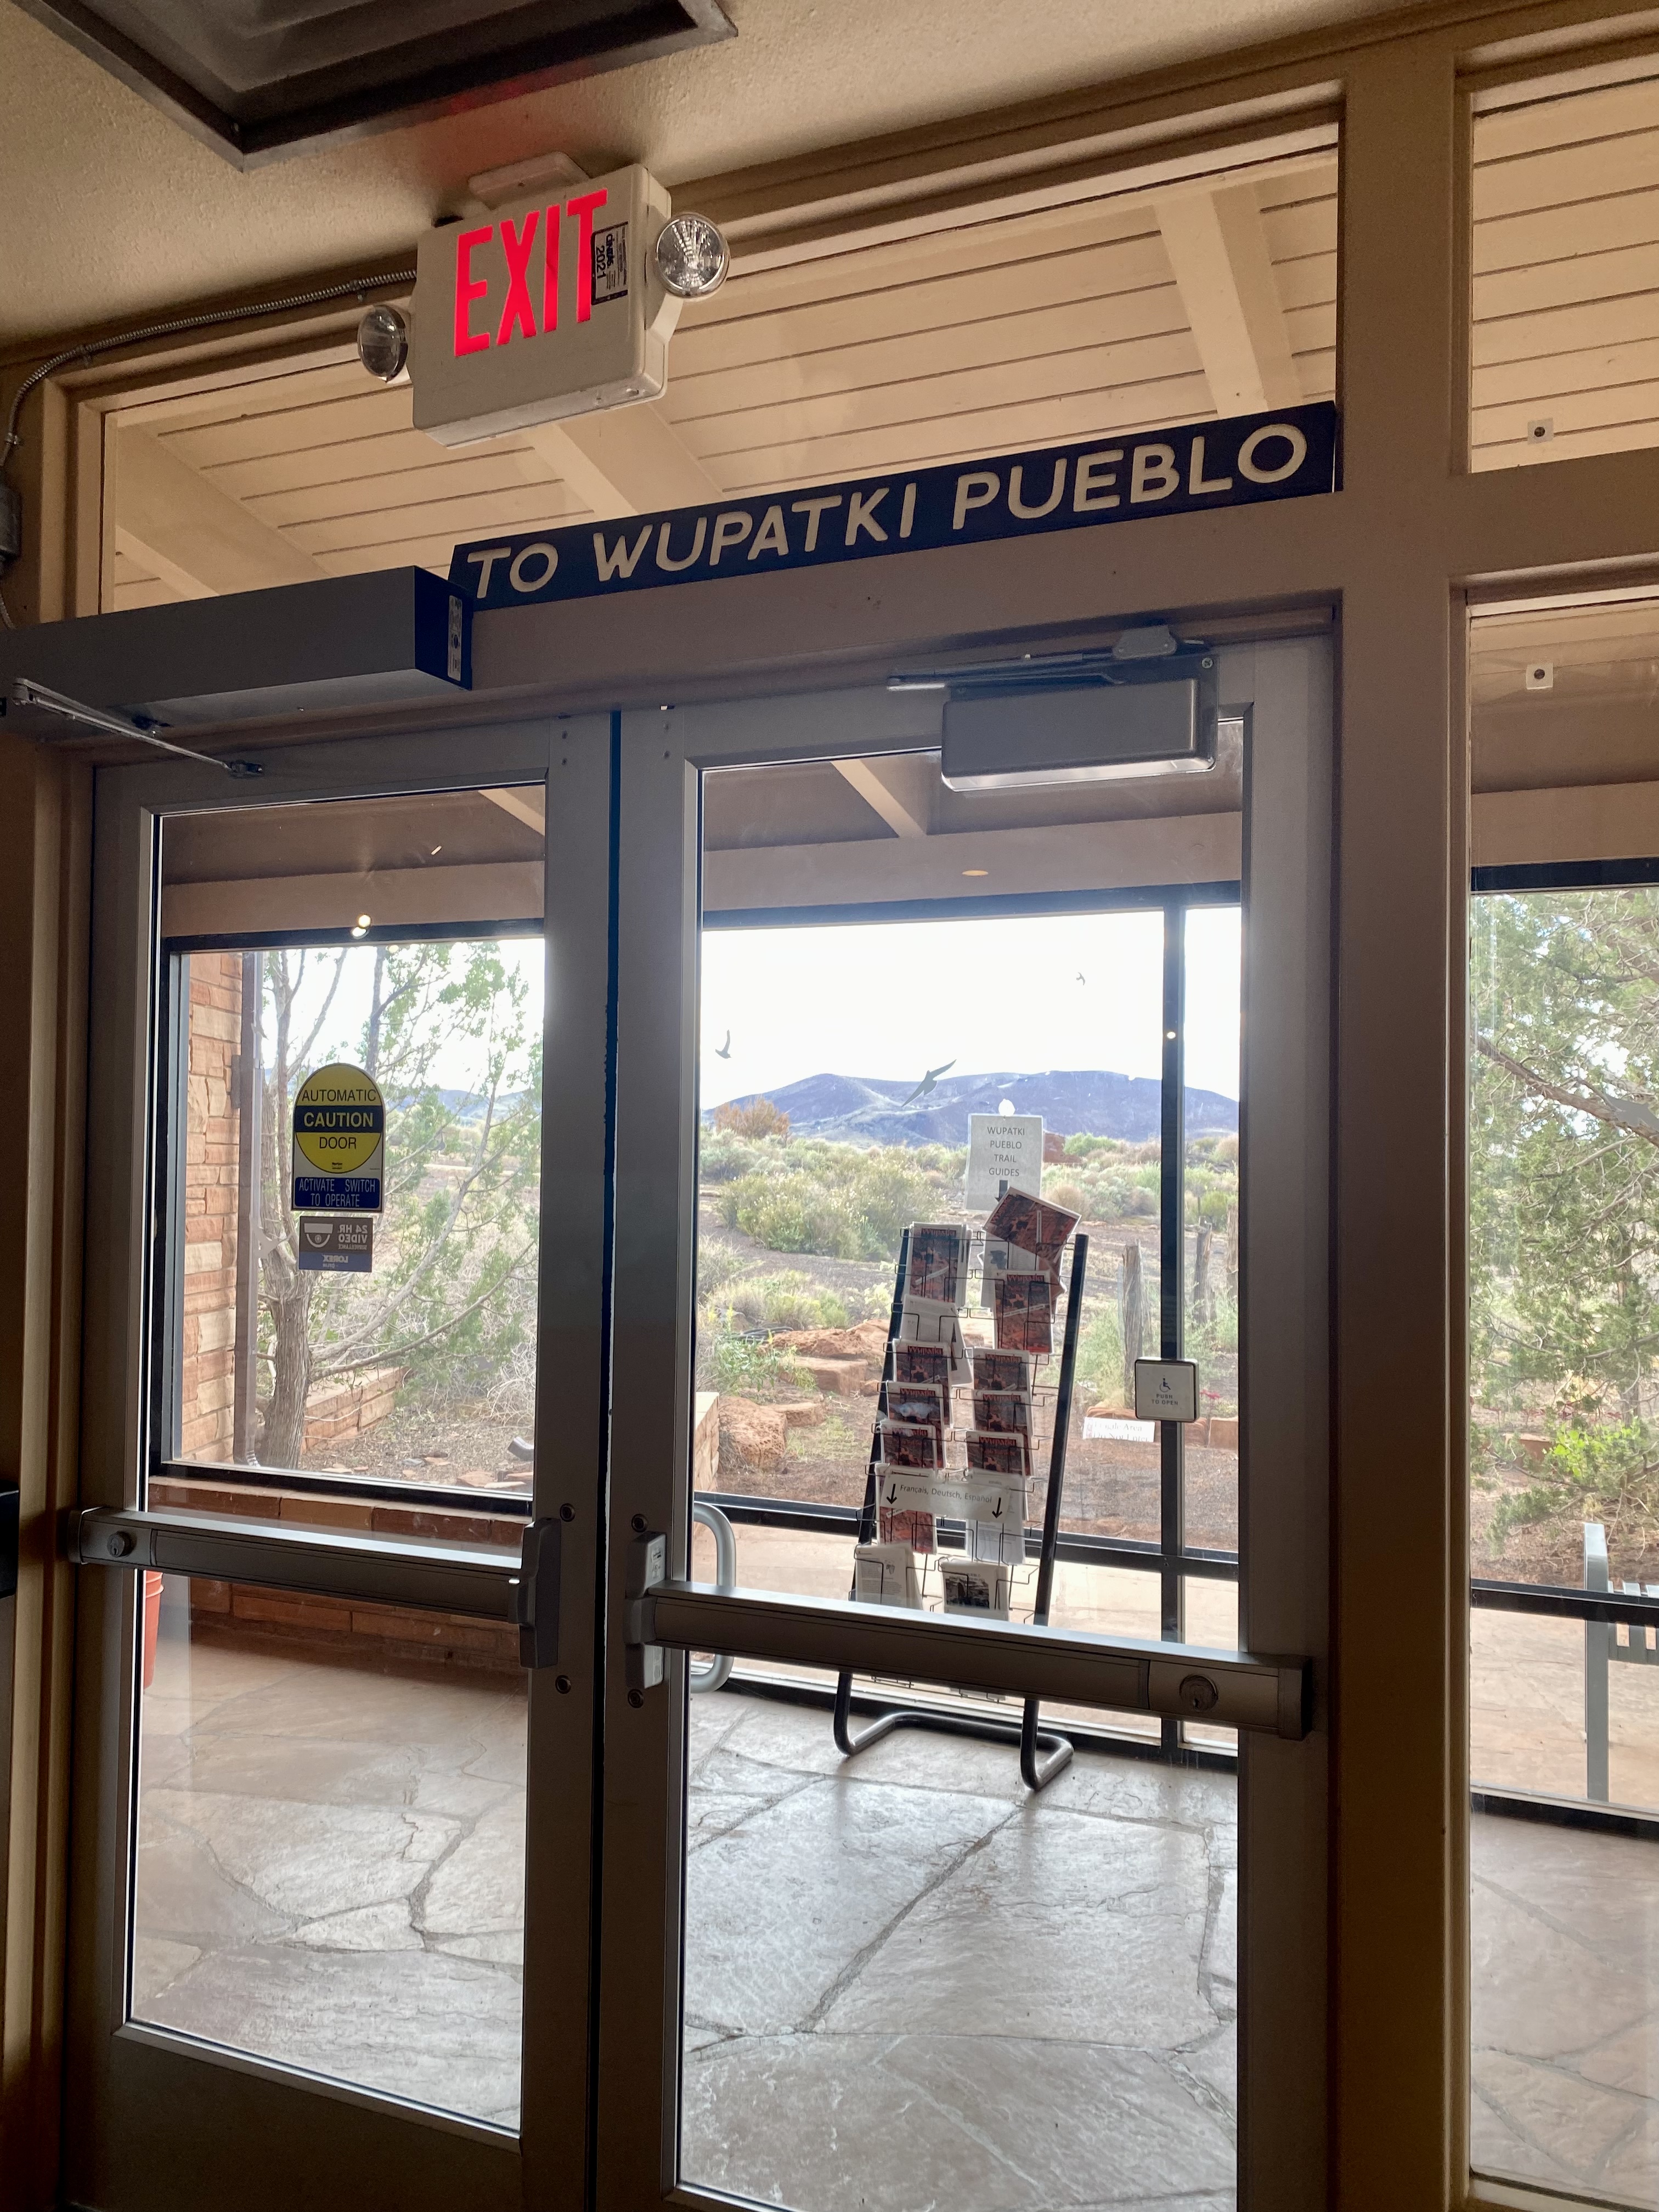 exit door to wupatki pueblo